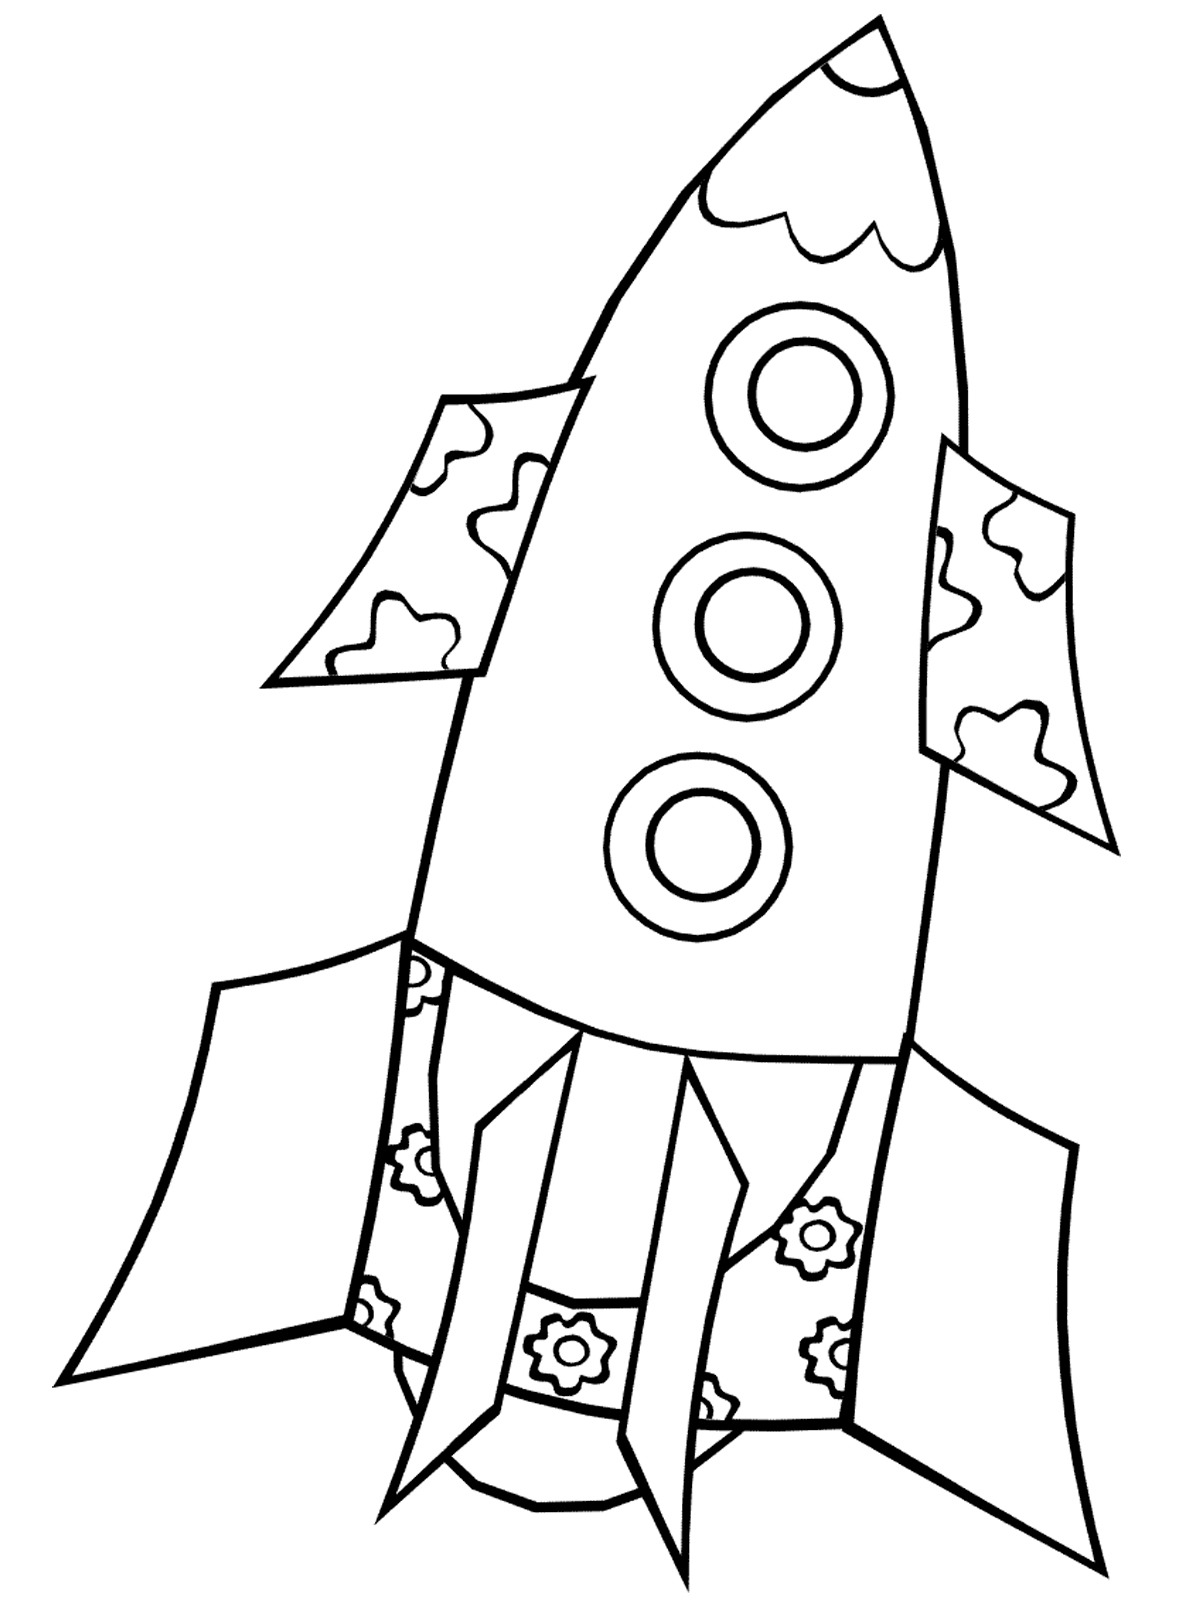 Раскраска ракета для детей 4 лет. Ракета раскраска. Космический корабль раскраска для детей. Космическая ракета раскраска. Ракета рисунок для детей.